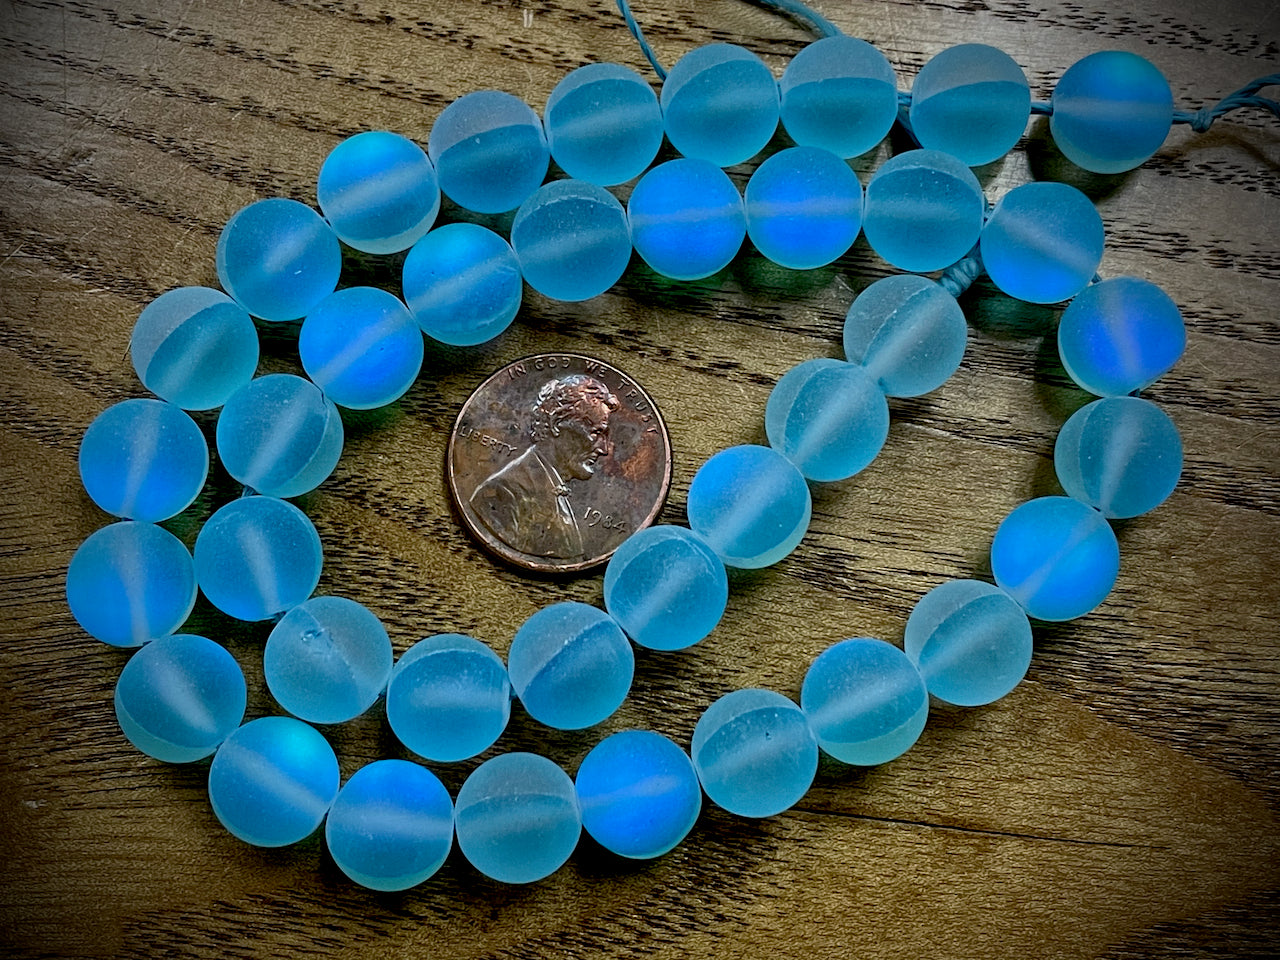 Mermaid Glass (Manmade Moonstone) 10mm Round Beads